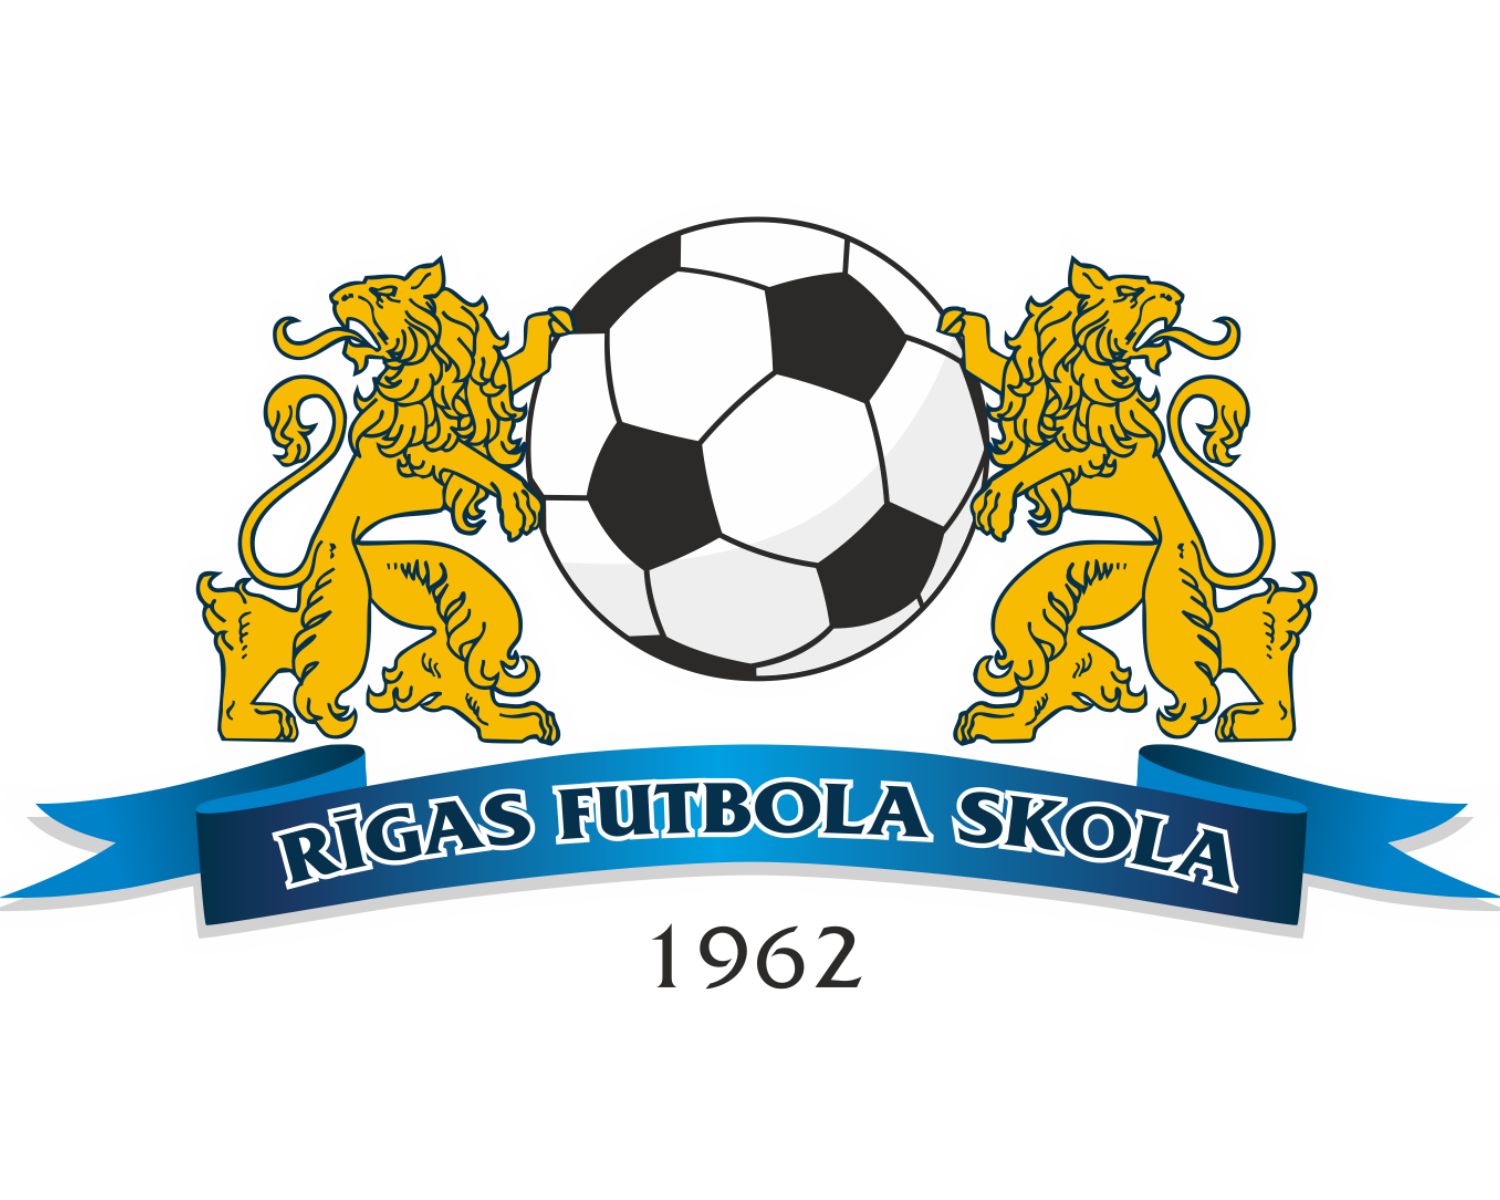 fk-rigas-futbola-skola-13-football-club-facts